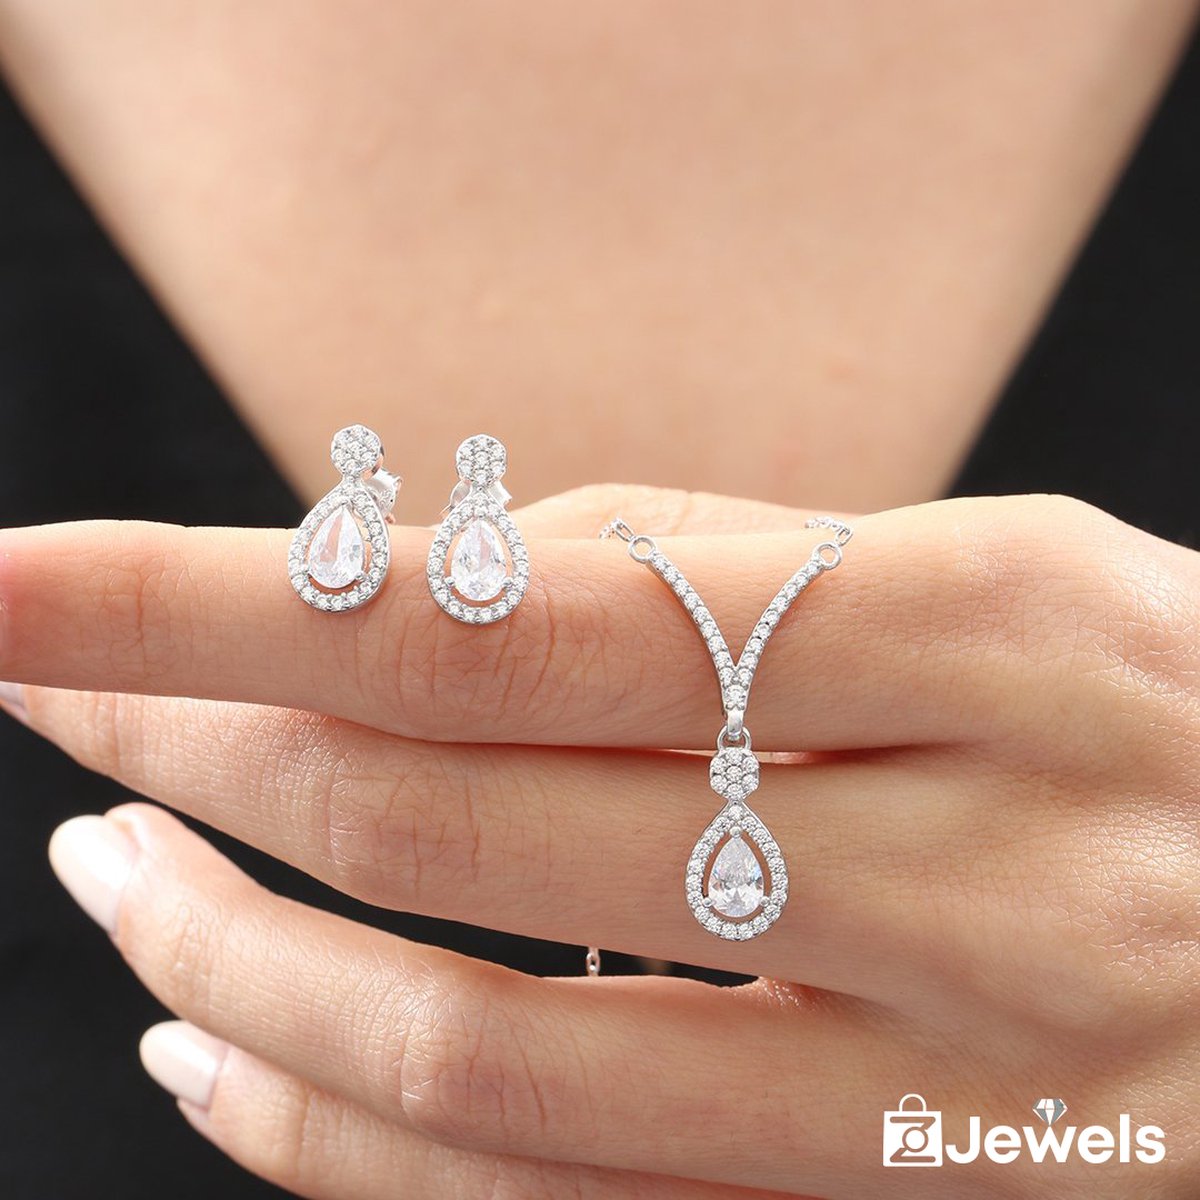 OZ Jewels Zilveren ketting- en Oorbellen set met Zirkonium - Accessoires - Liefdessieraden - - Damesoorbellen - Valentijnsdag - Cadeau - Moederdag - oorbellen Meisje - Sieraden Dames - In mooie geschenkverpakking